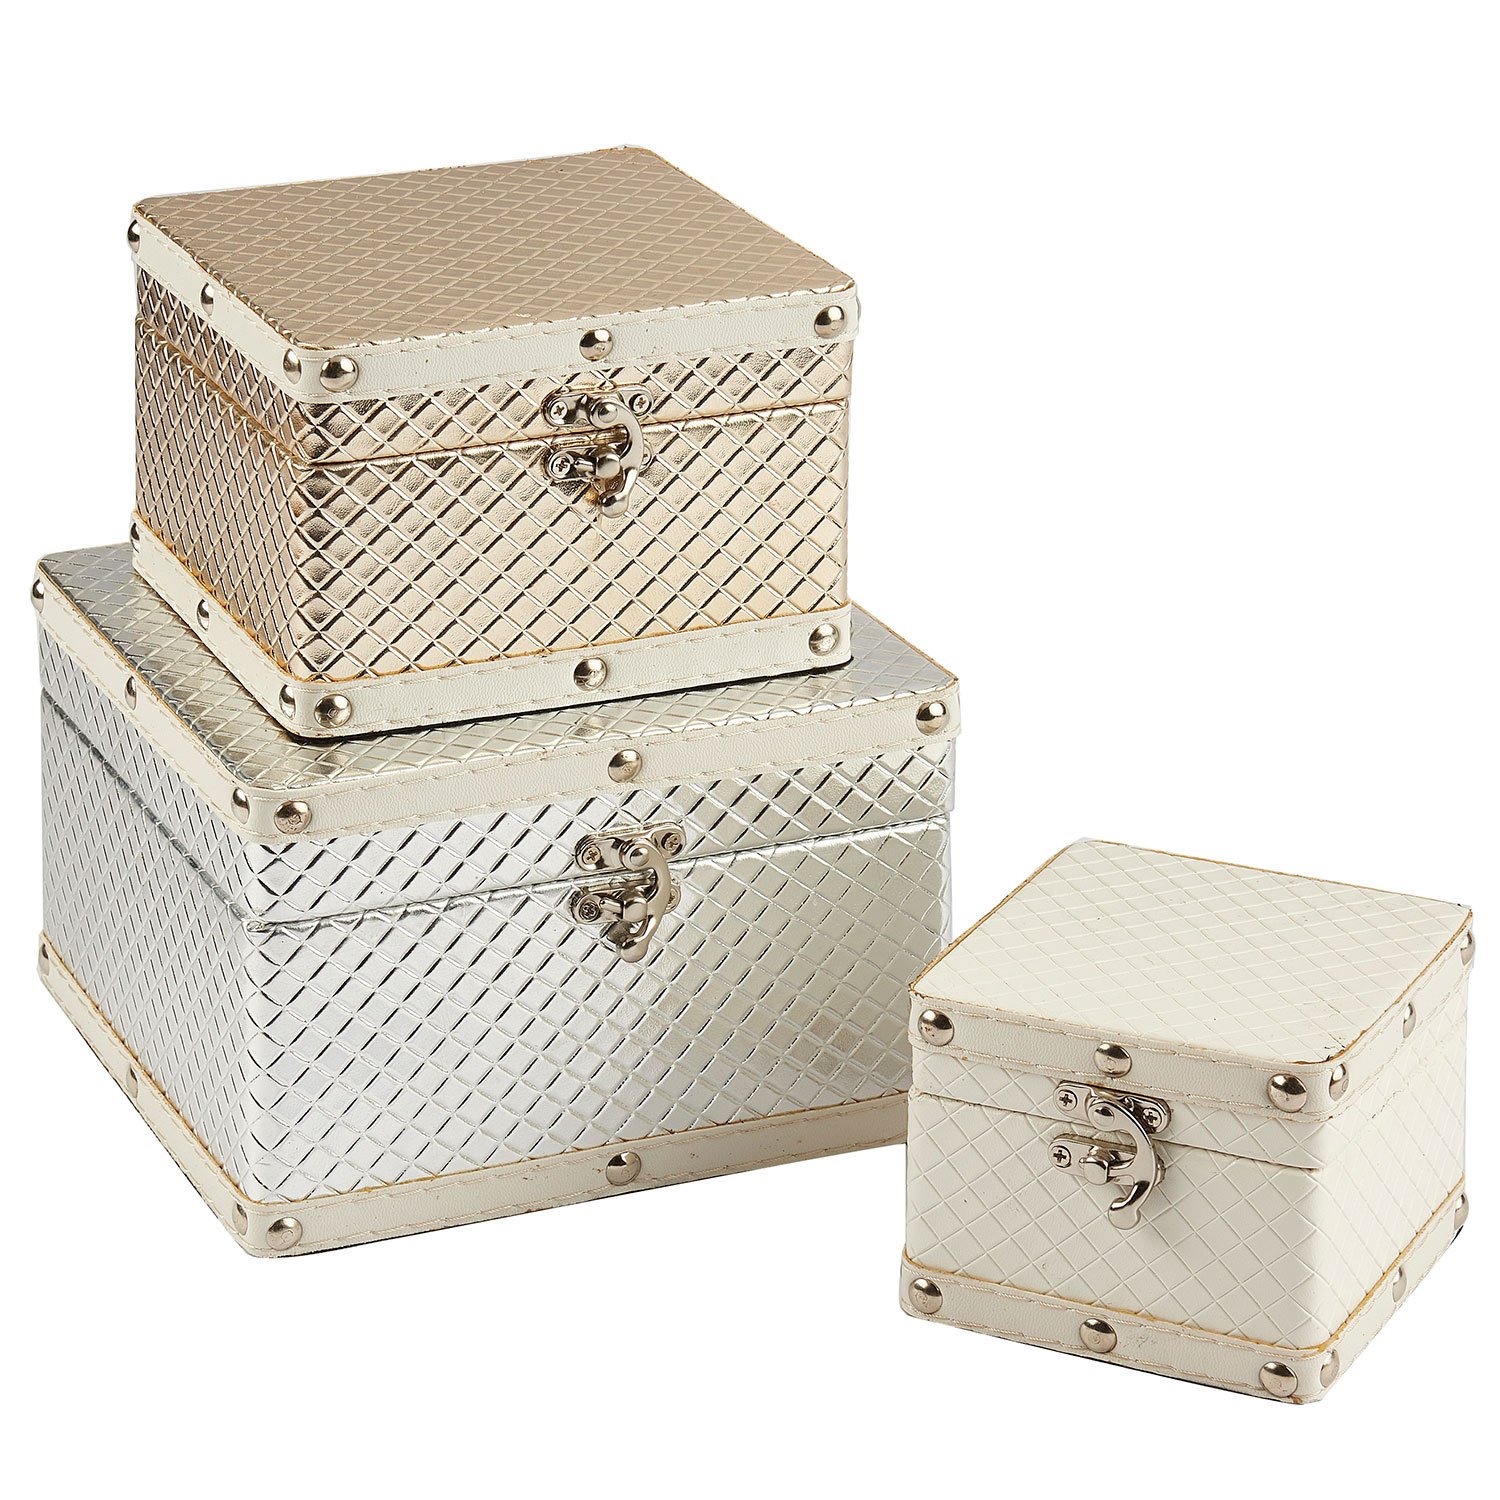 Decorative Wood Boxes Wholesale